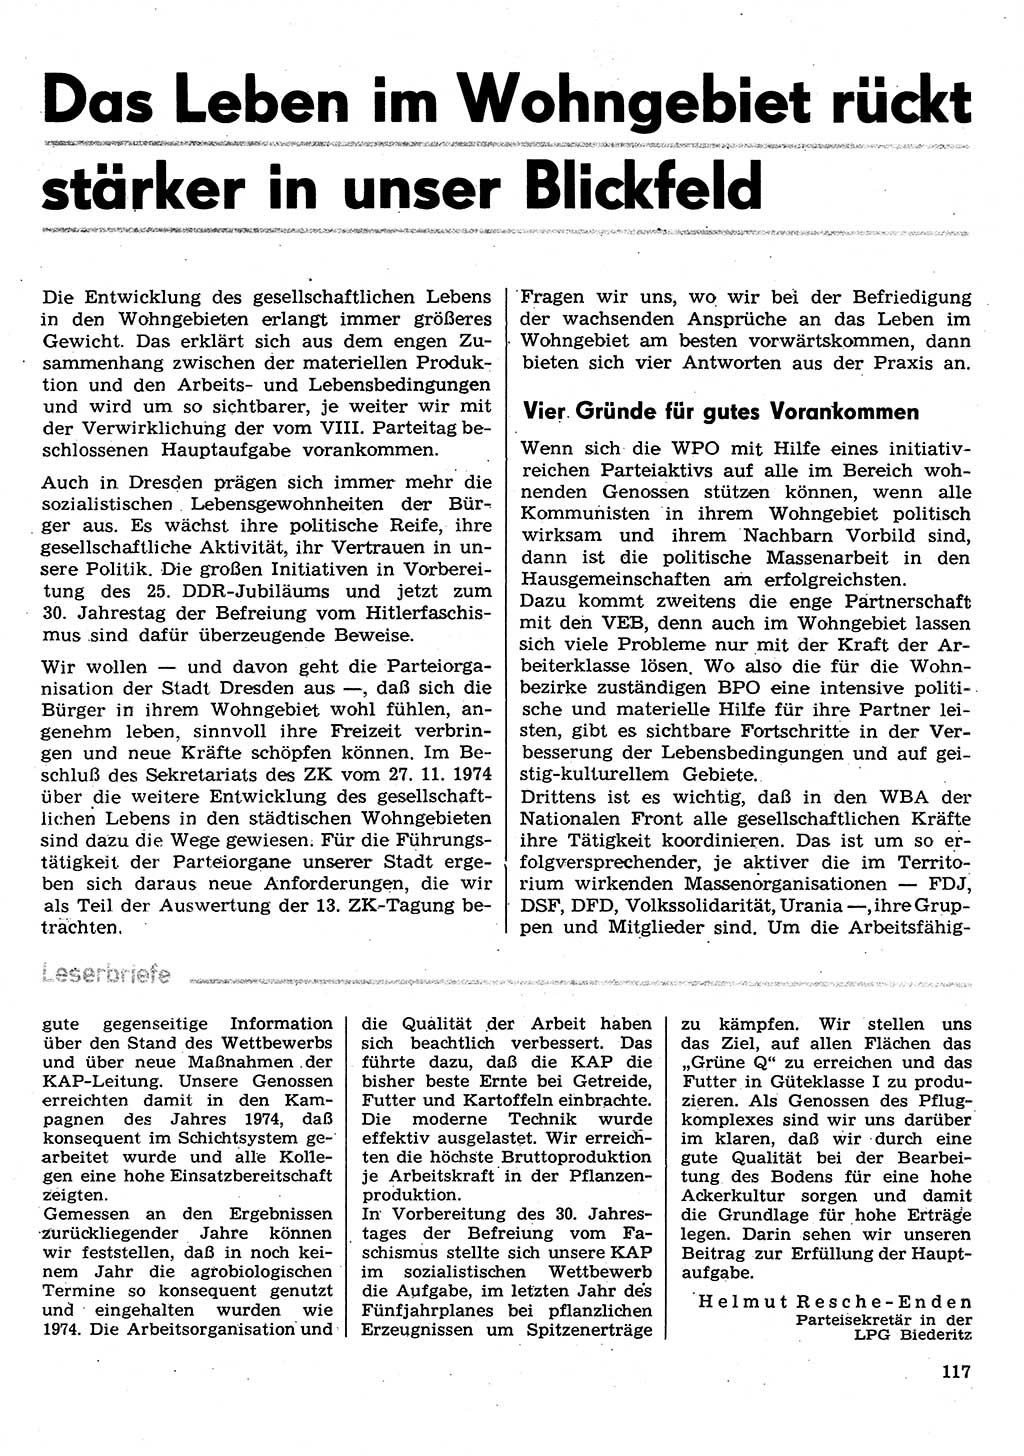 Neuer Weg (NW), Organ des Zentralkomitees (ZK) der SED (Sozialistische Einheitspartei Deutschlands) für Fragen des Parteilebens, 30. Jahrgang [Deutsche Demokratische Republik (DDR)] 1975, Seite 117 (NW ZK SED DDR 1975, S. 117)